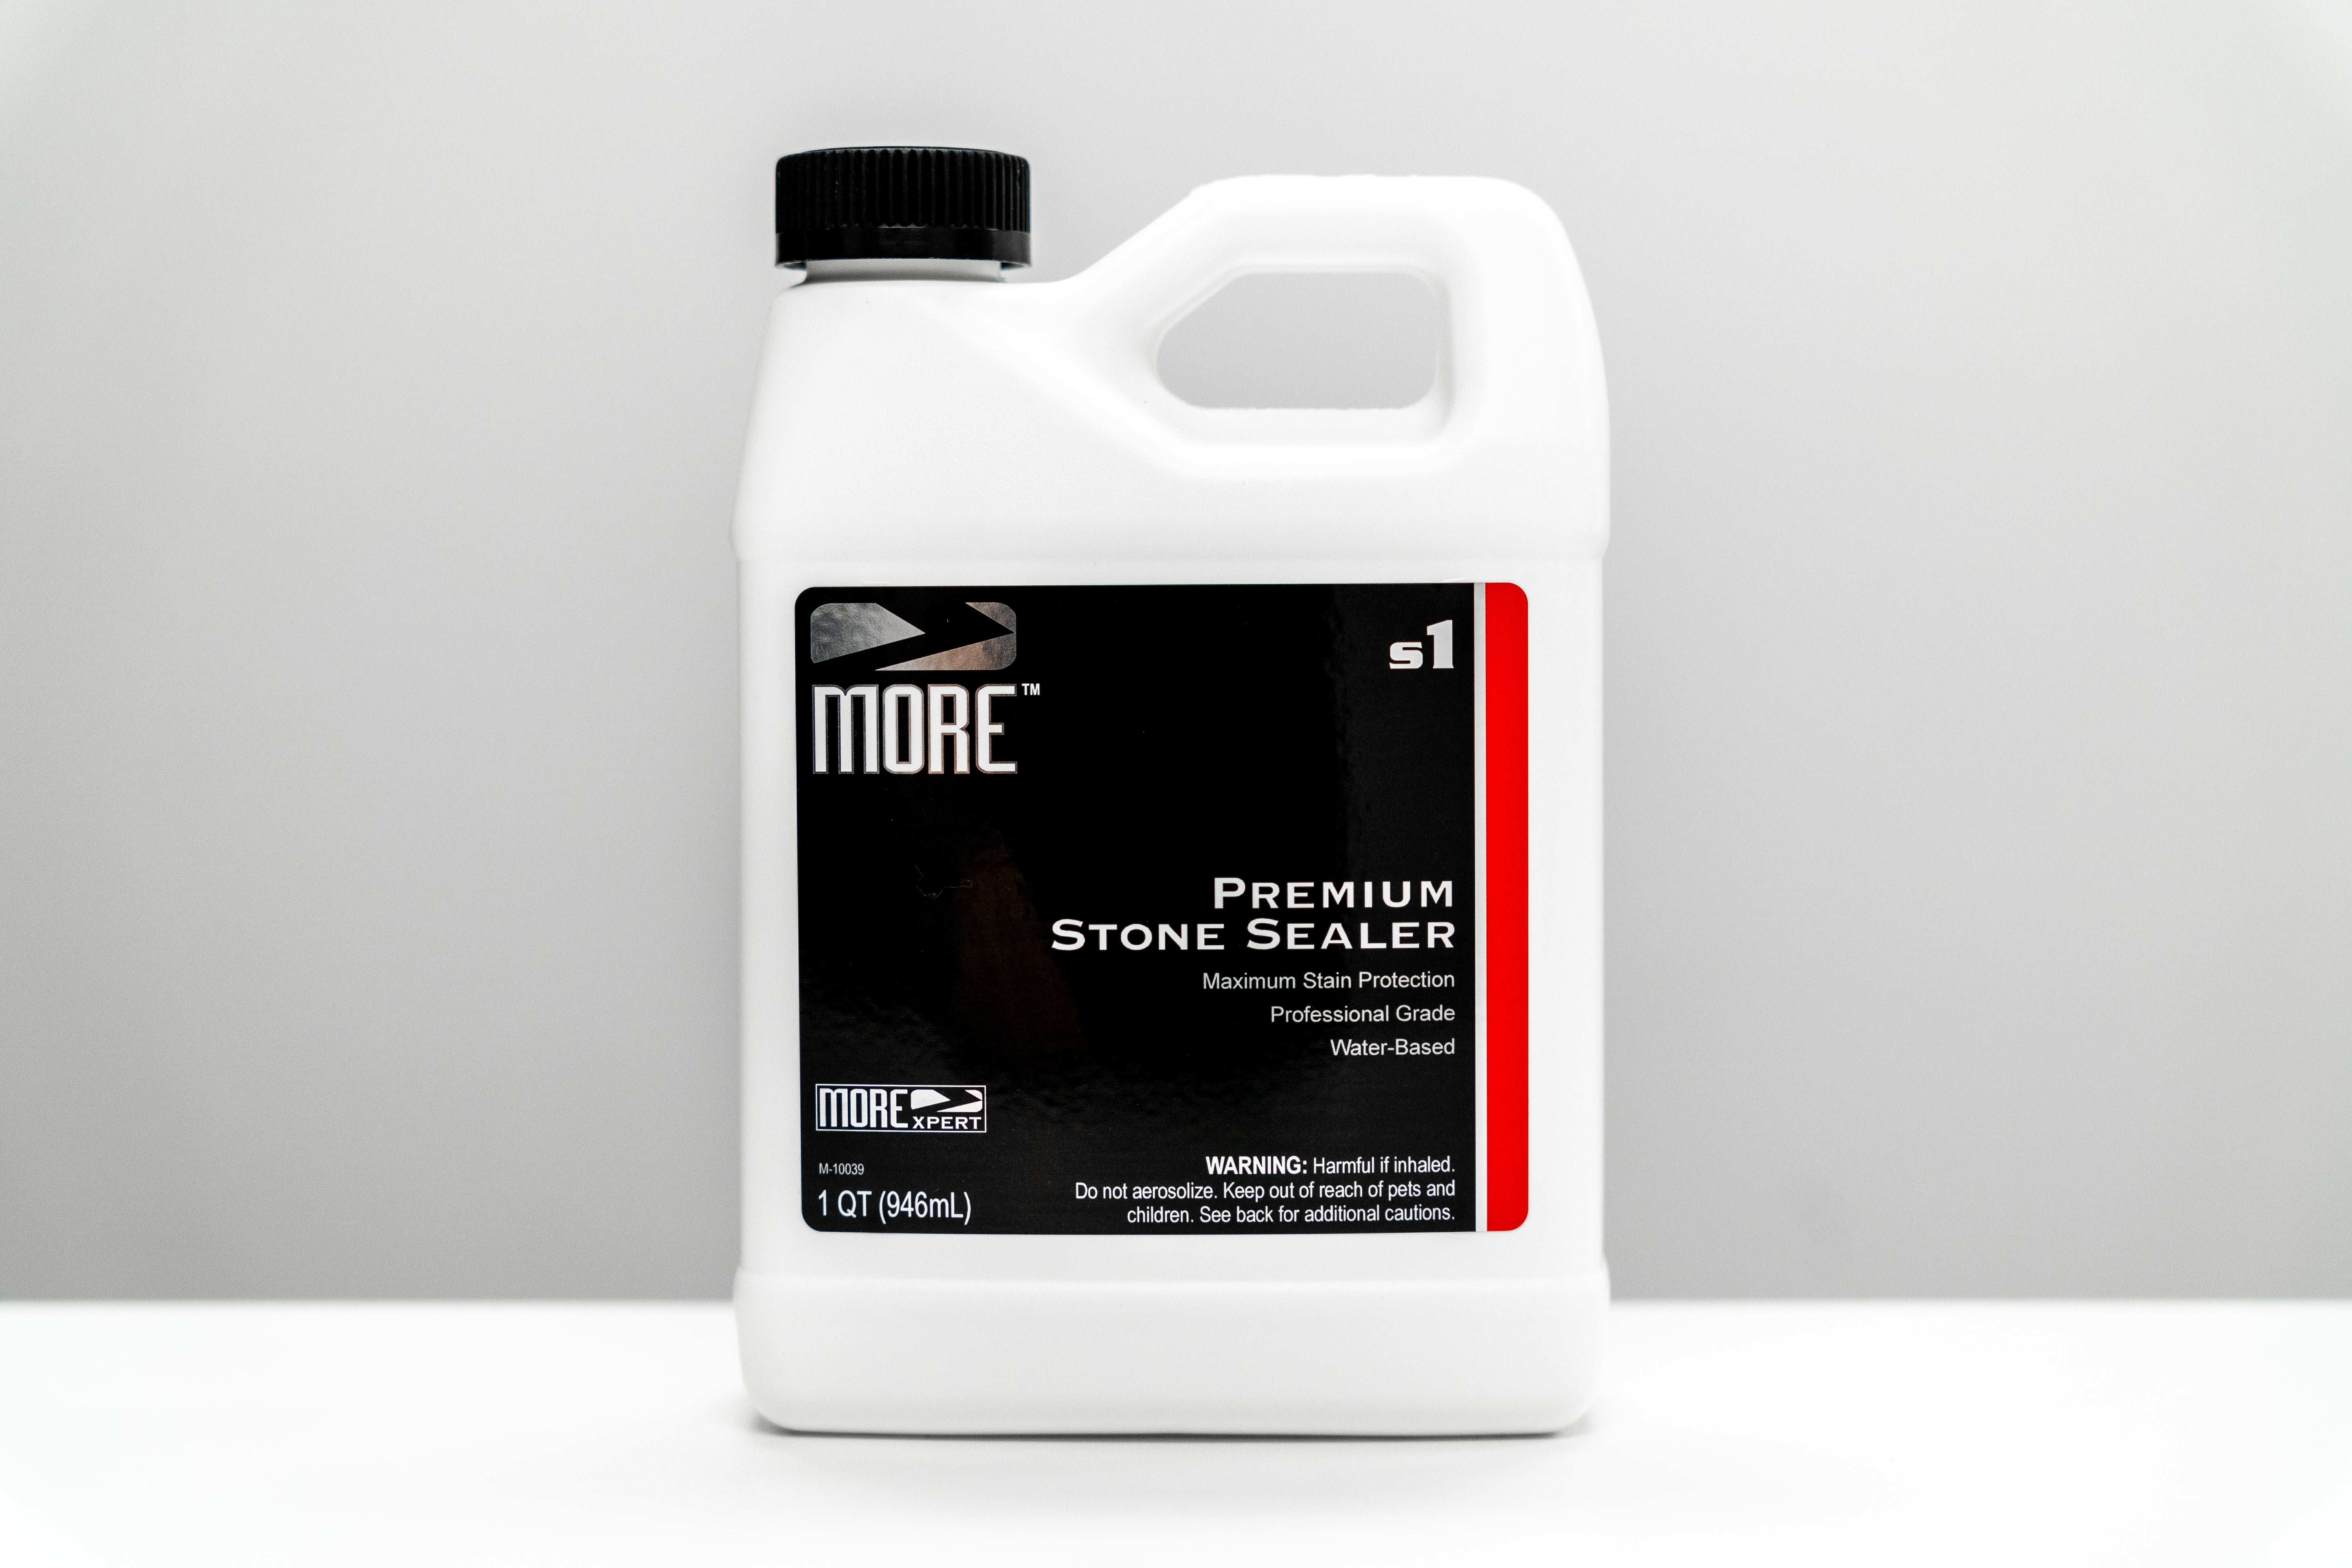 MORE® Premium Stone Sealer